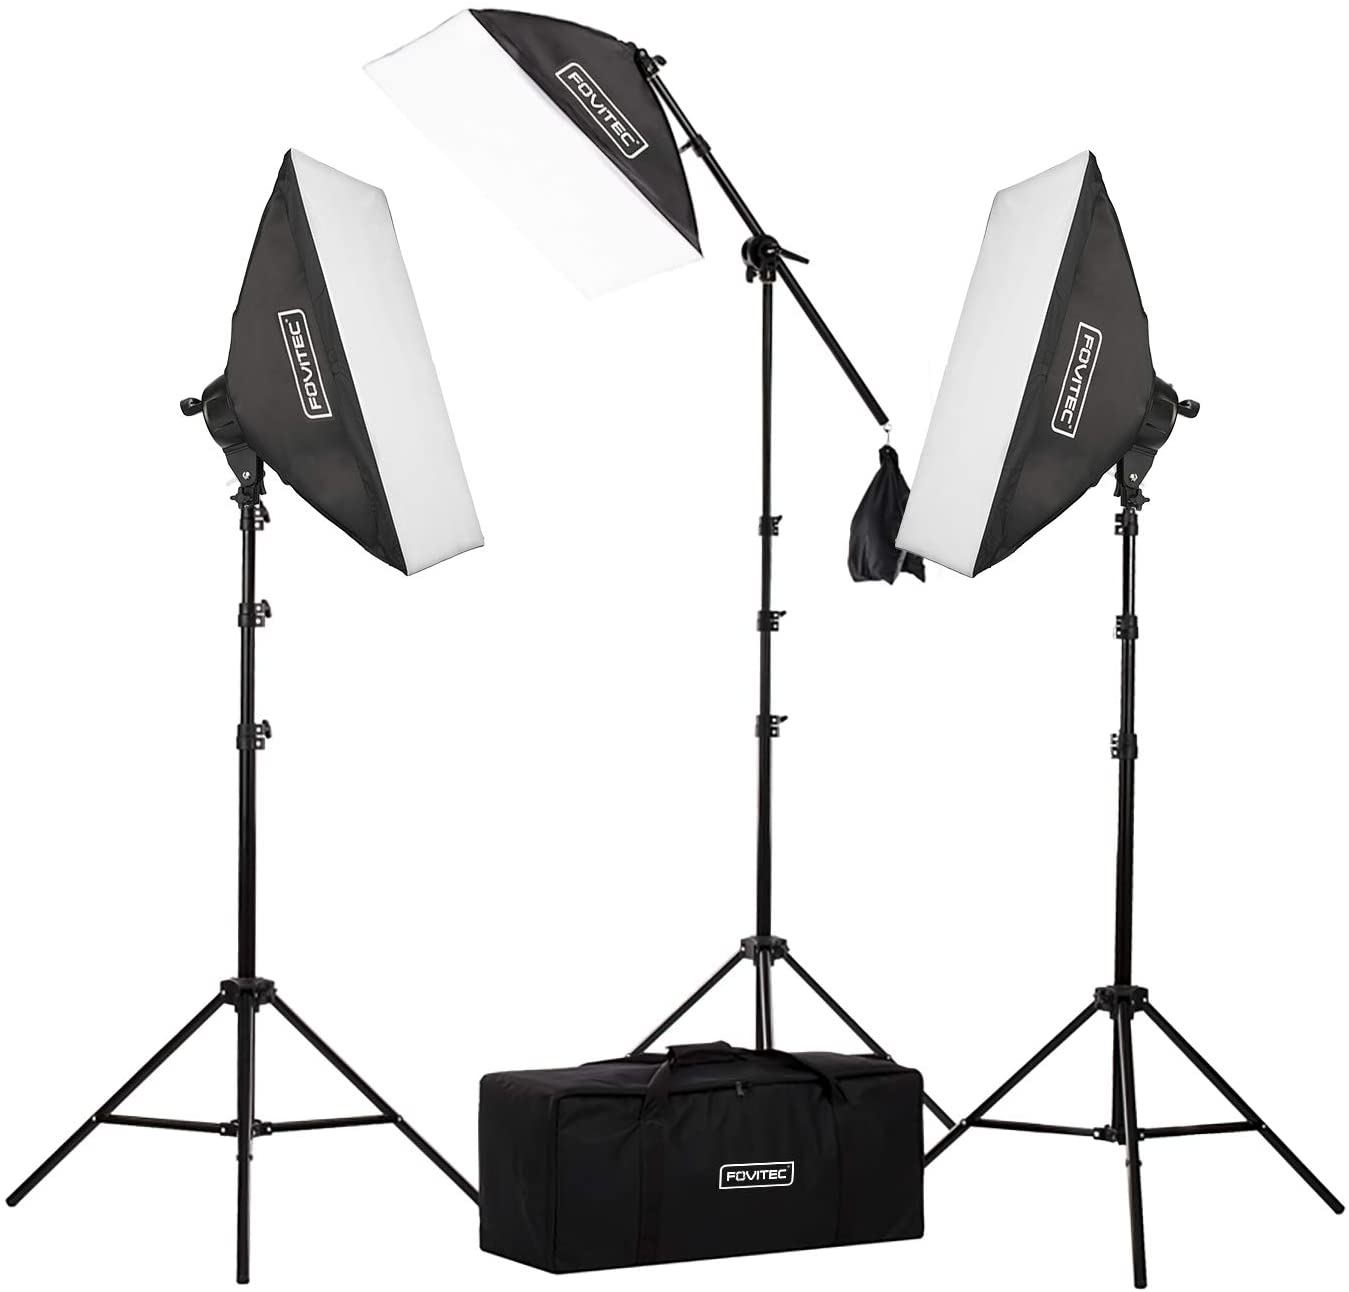 stream lighting - Fovitec - 3 light fluorescent studio lighting kits